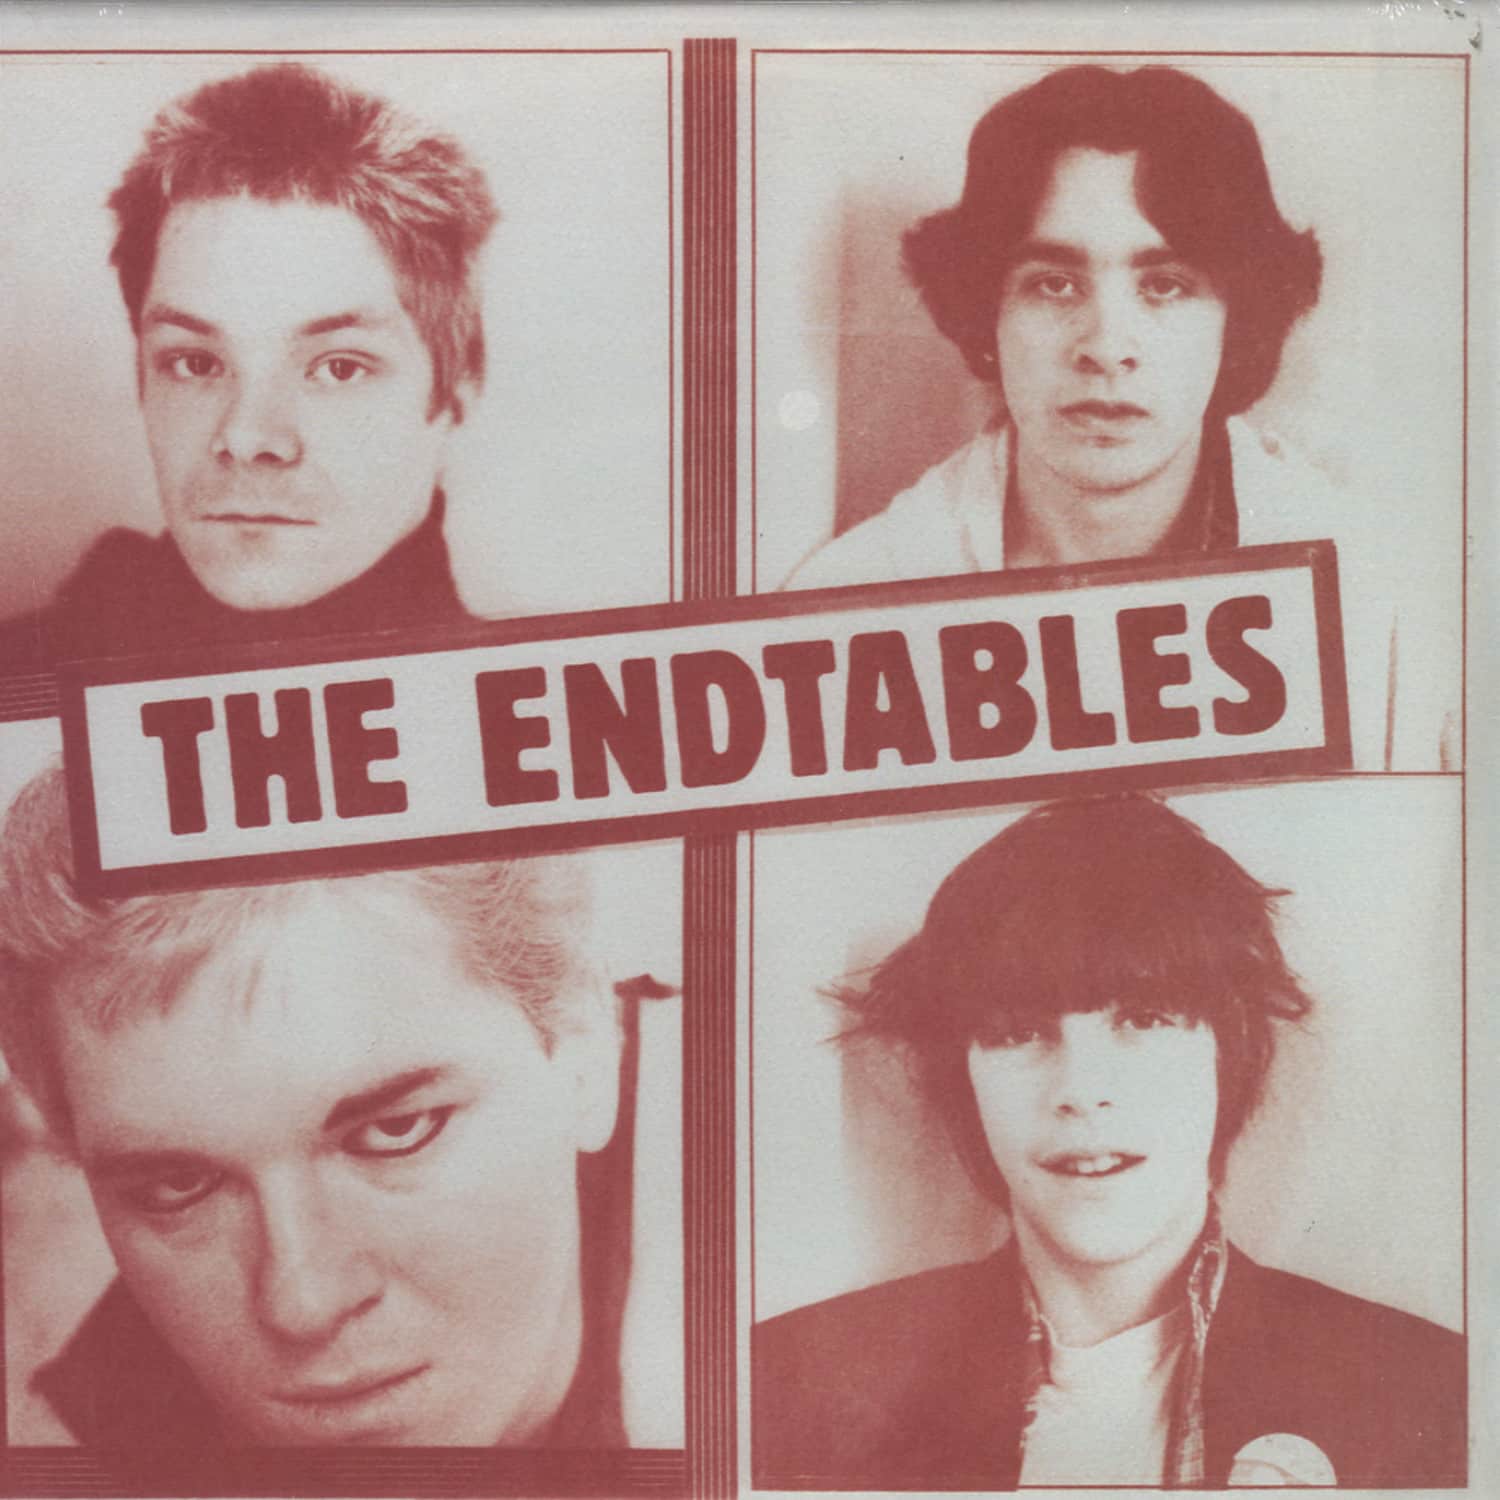 The Endtables - THE ENDTABLES